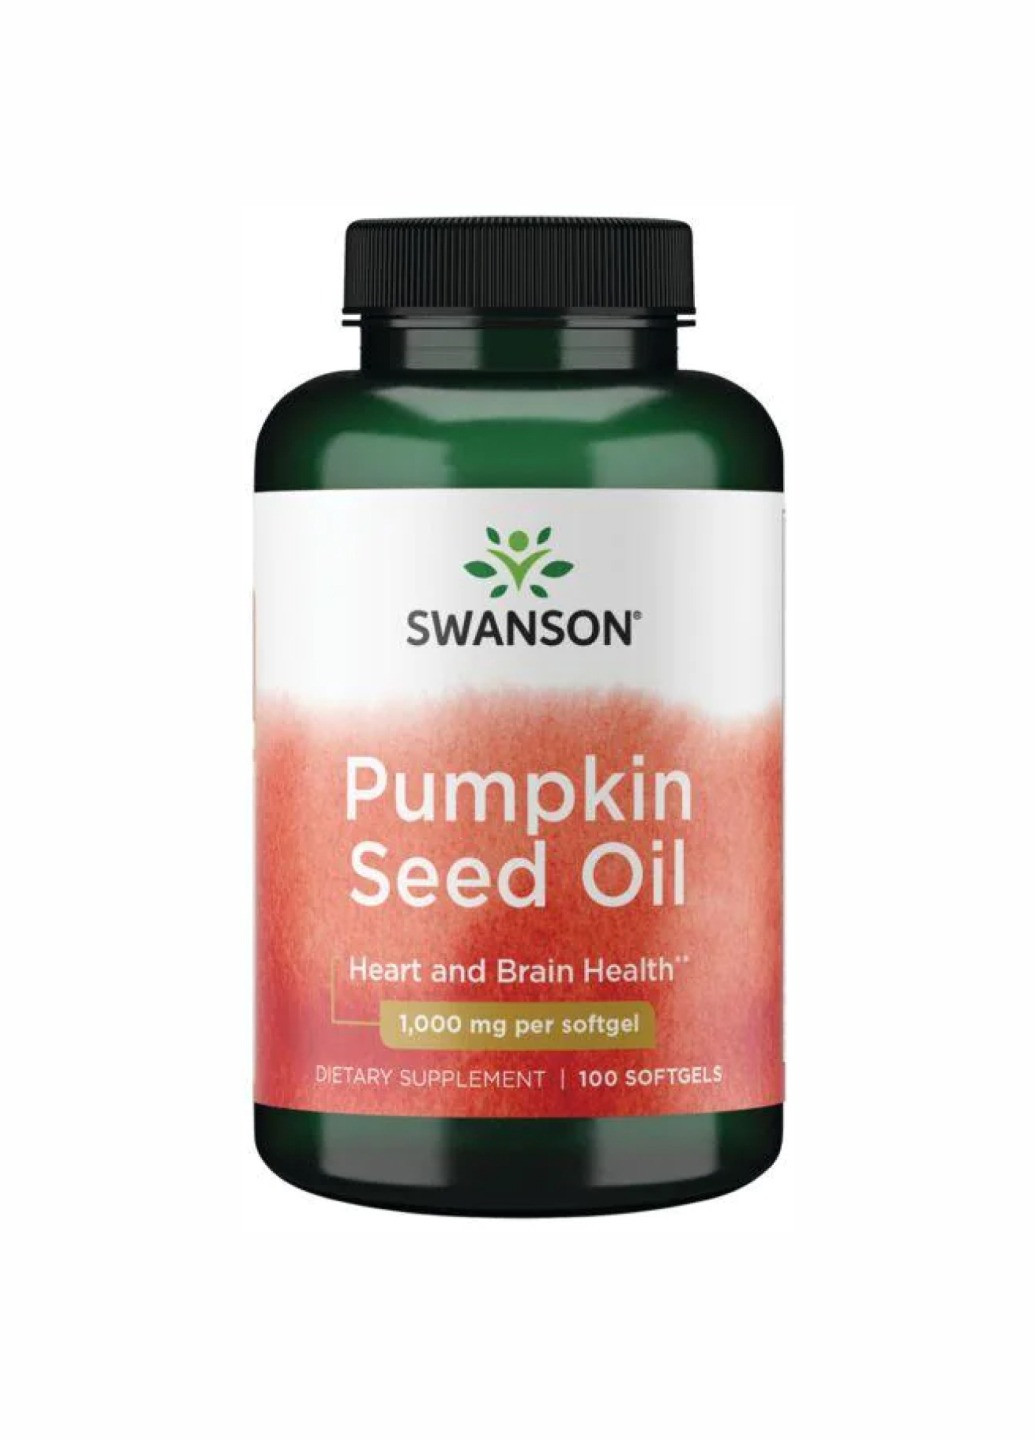 Олія насіння гарбуза Pumpkin Seed Oil 1,000 mg - 100softgels (антиоксидант) для шкіри, здоров'я простати та серця Swanson (260196304)